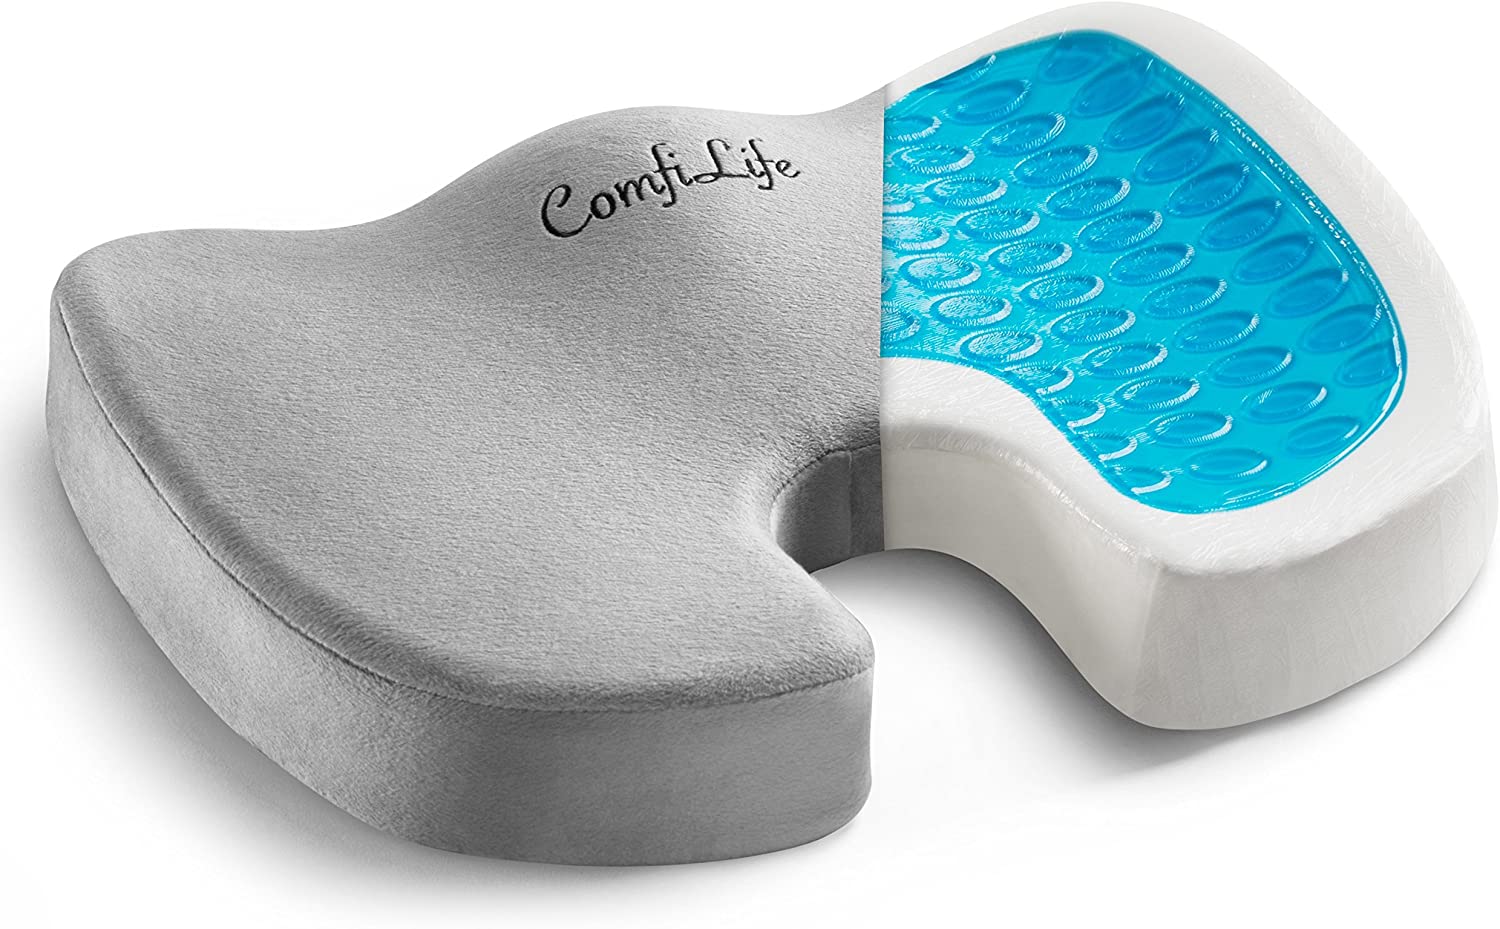 Best Wheelchair Cushions - ComfiLife Gel Enhanced Seat Cushion